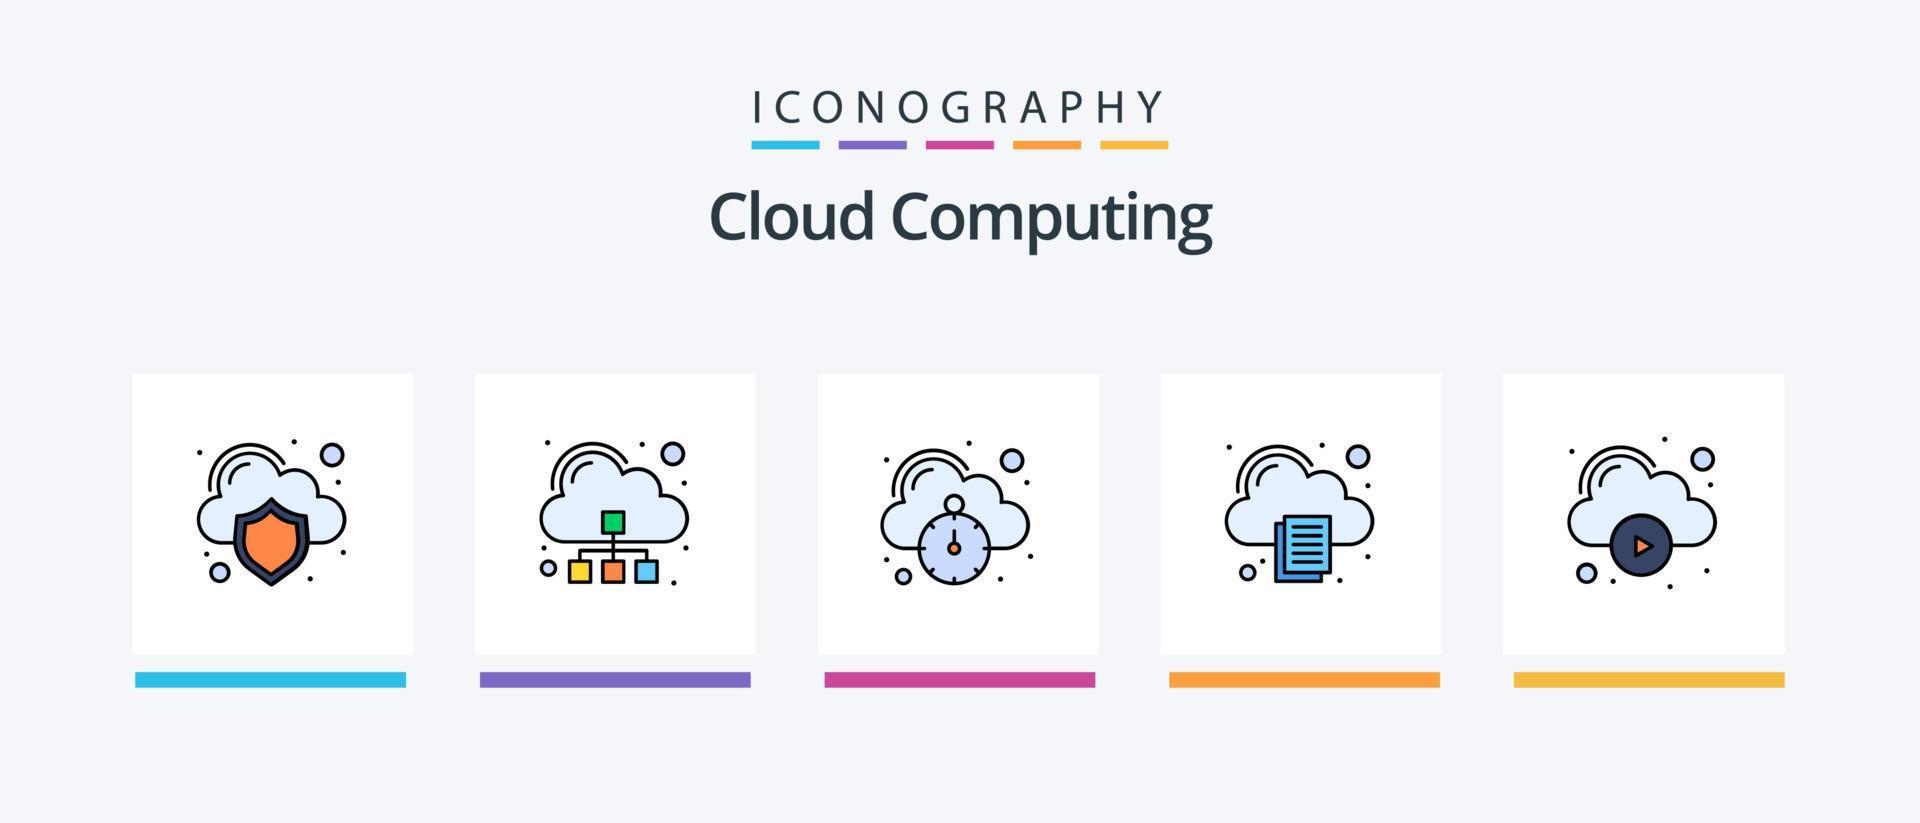 linha de computação em nuvem cheia de 5 ícones incluindo nuvem. foto. nuvem. foto. imagem. design de ícones criativos vetor